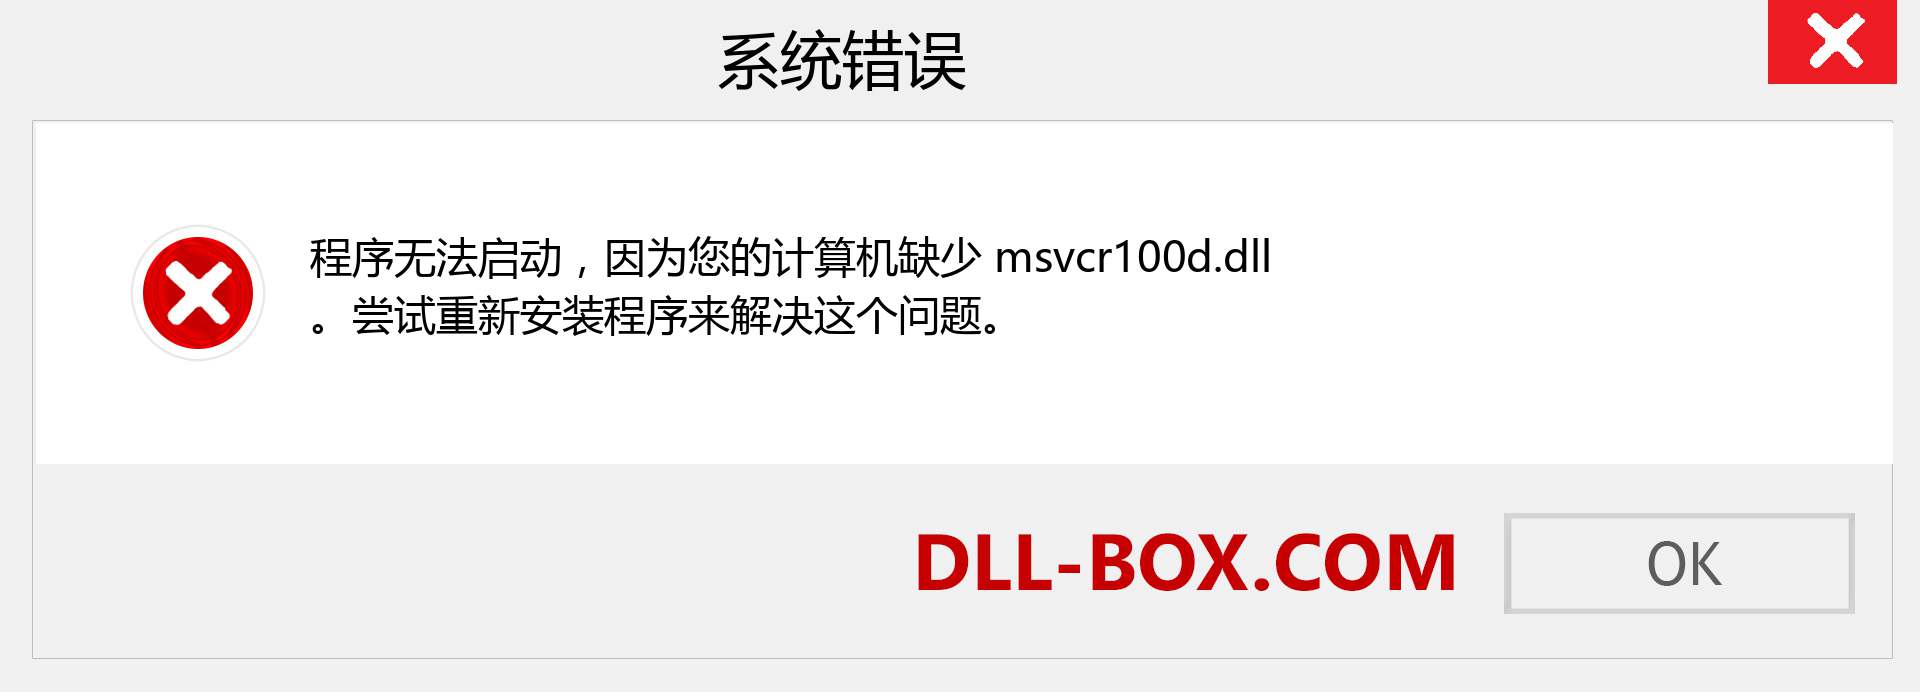 msvcr100d.dll 文件丢失？。 适用于 Windows 7、8、10 的下载 - 修复 Windows、照片、图像上的 msvcr100d dll 丢失错误